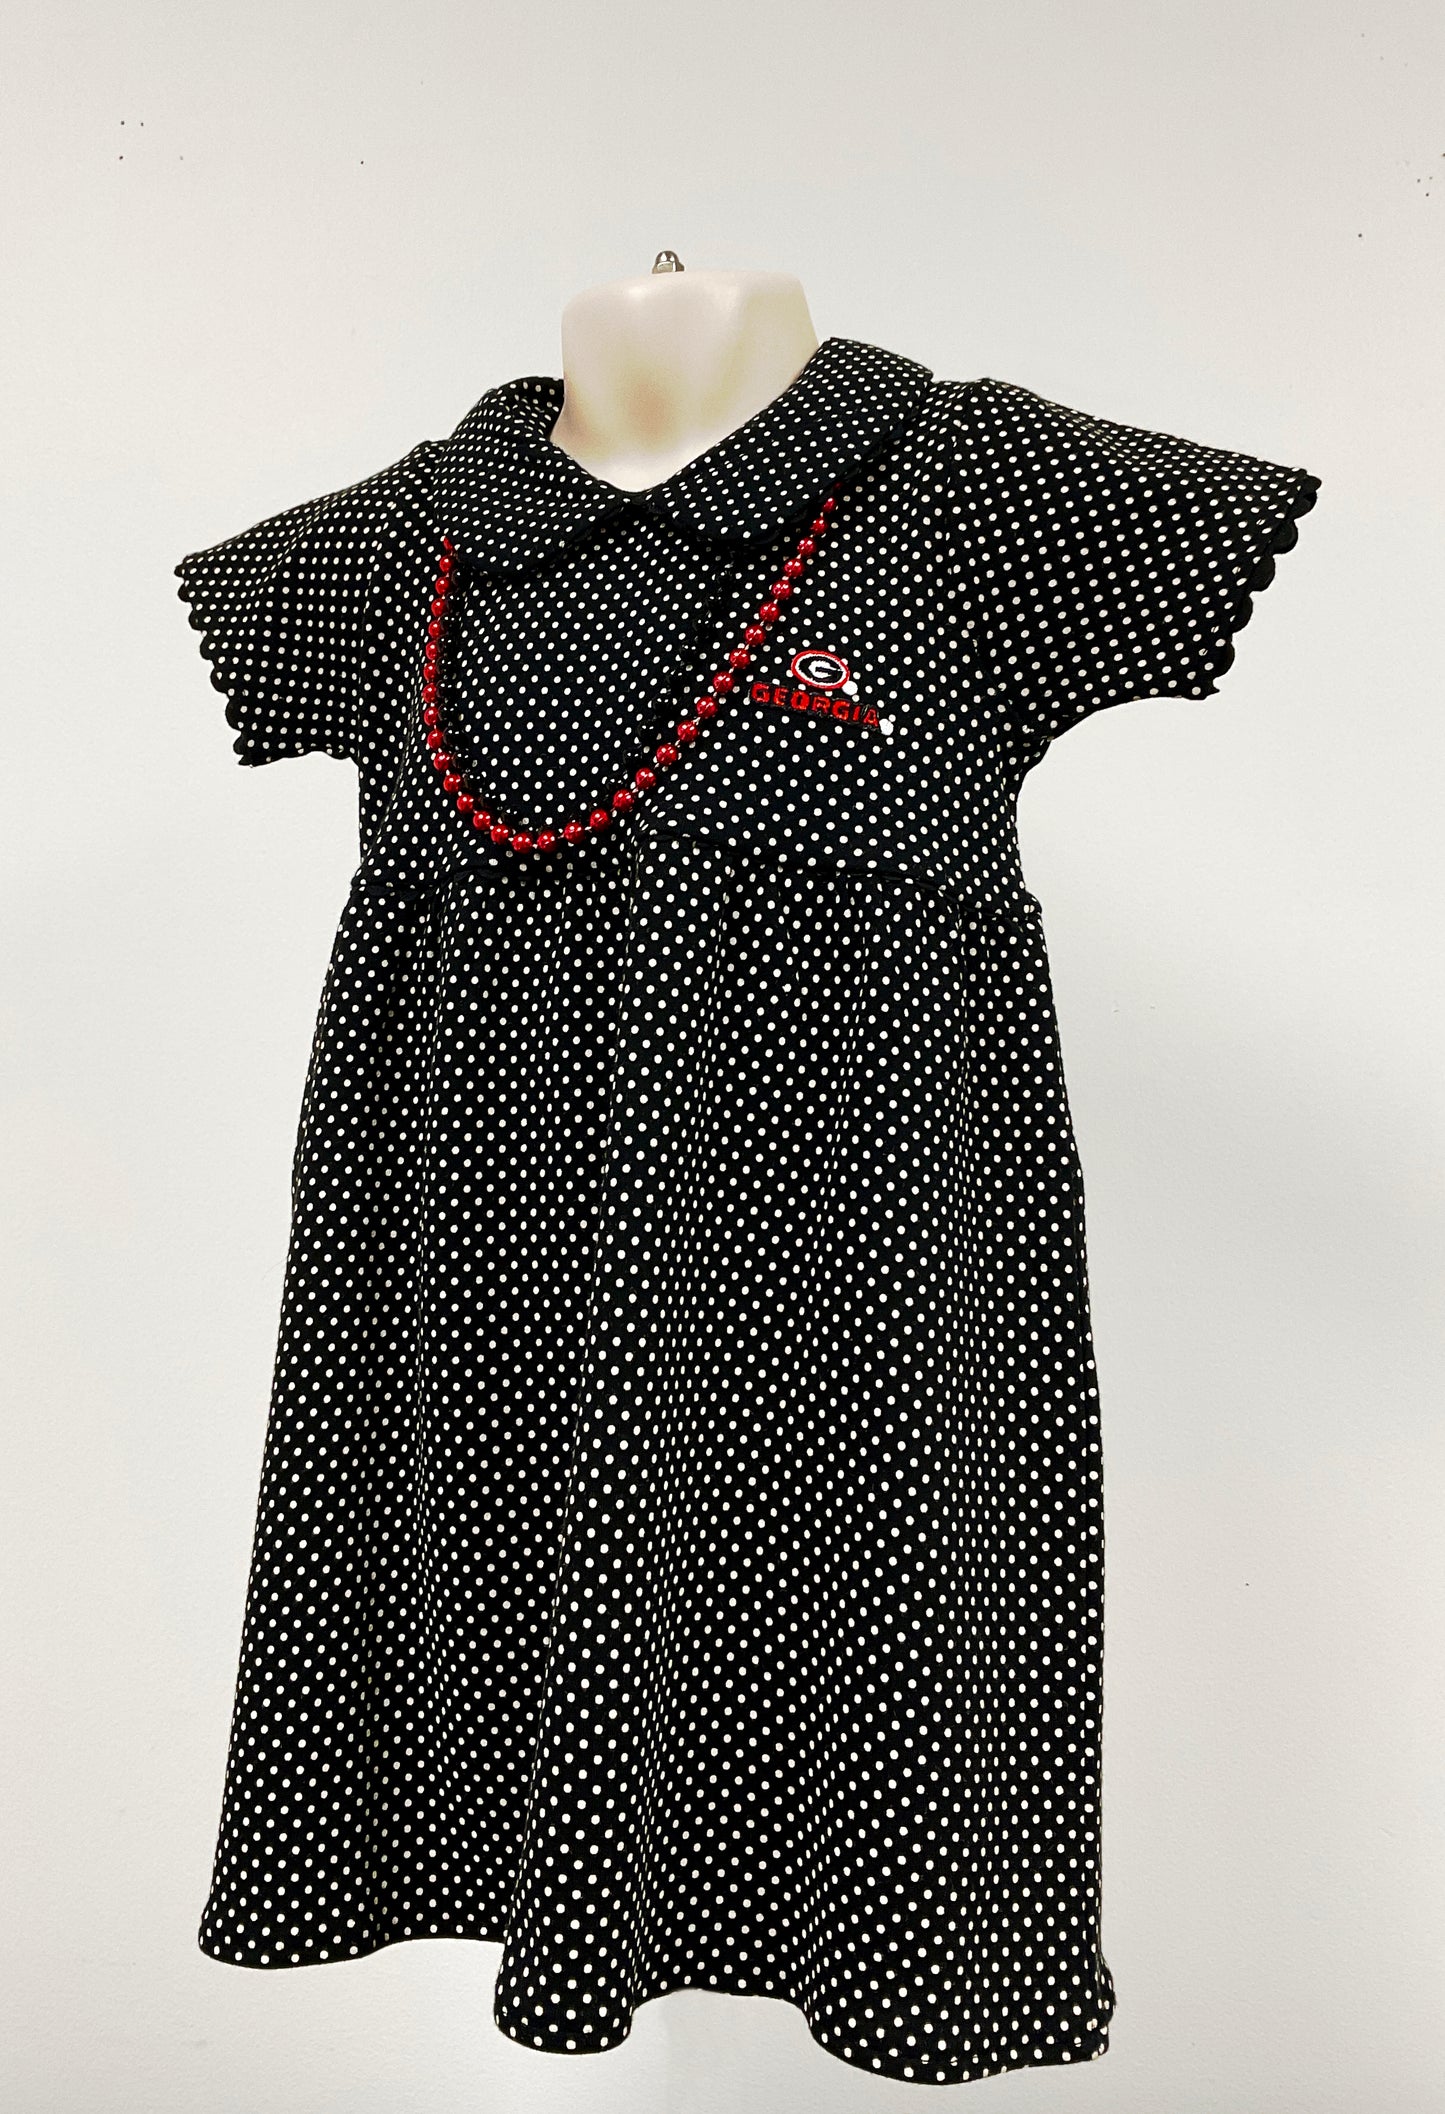 2FeetAhead UGA Black Polk-A-Dot Girls Toddler Dress